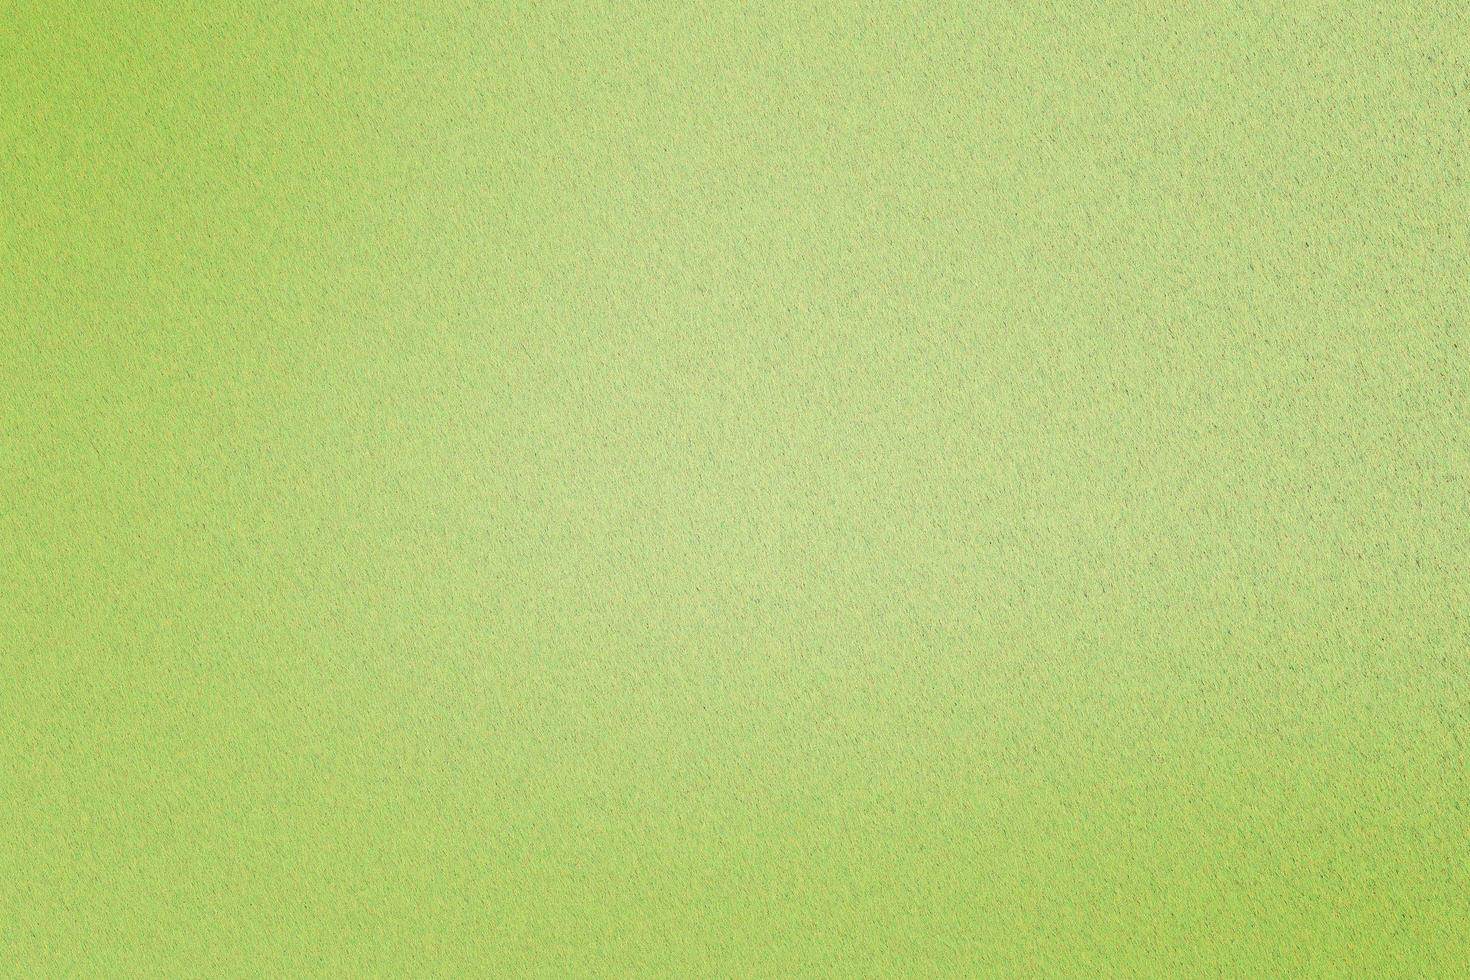 textura de folha de aço inoxidável verde claro, abstrato foto